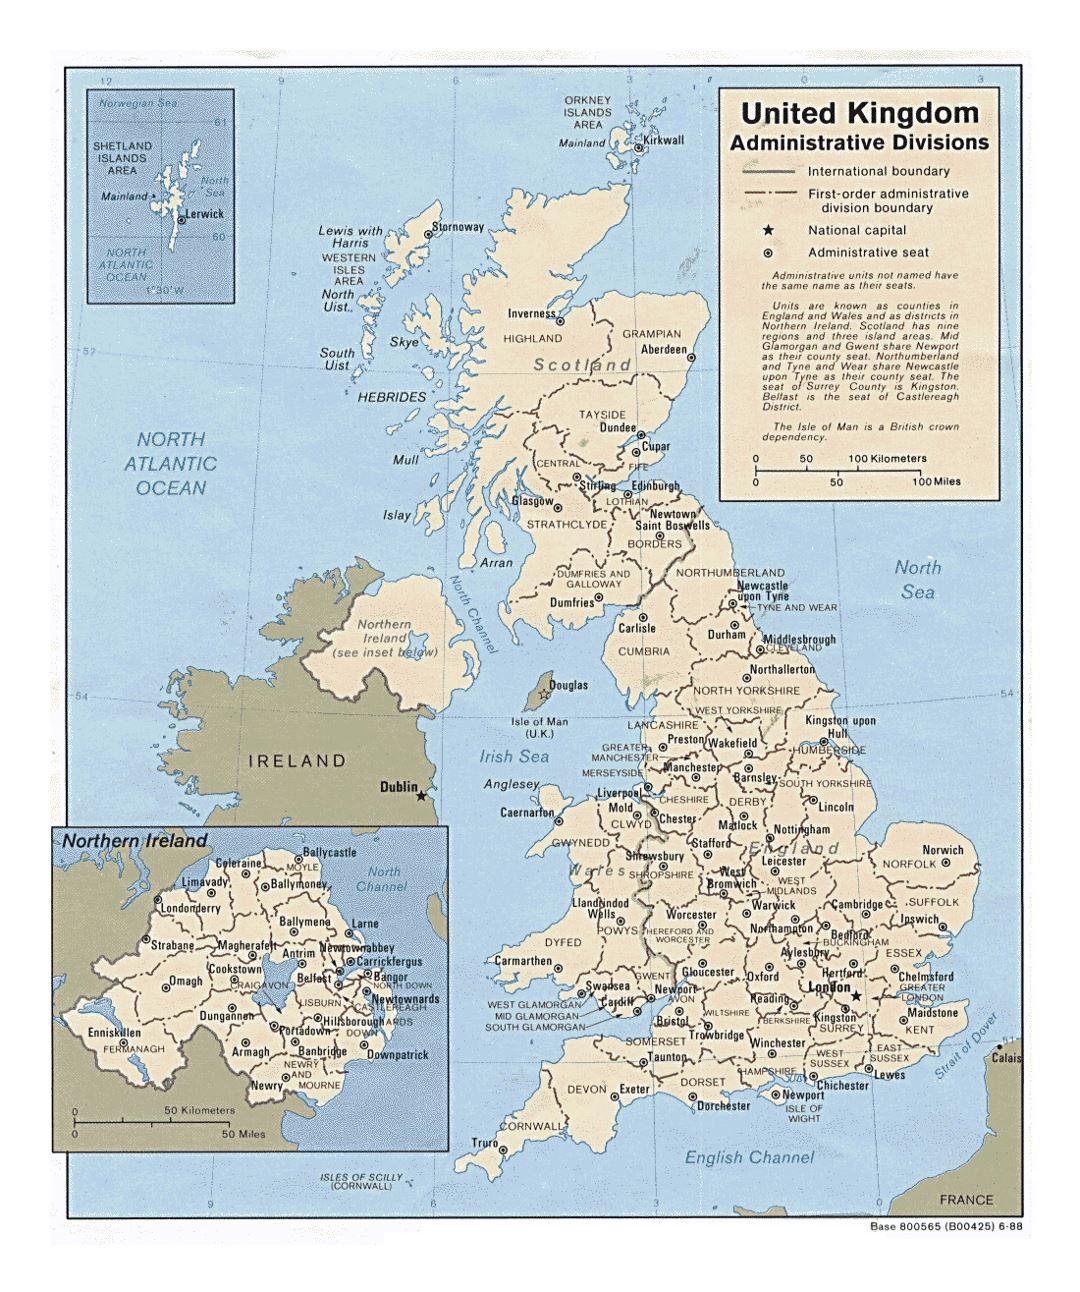 Detallado mapa de administrativas divisiones del Reino Unido - 1988